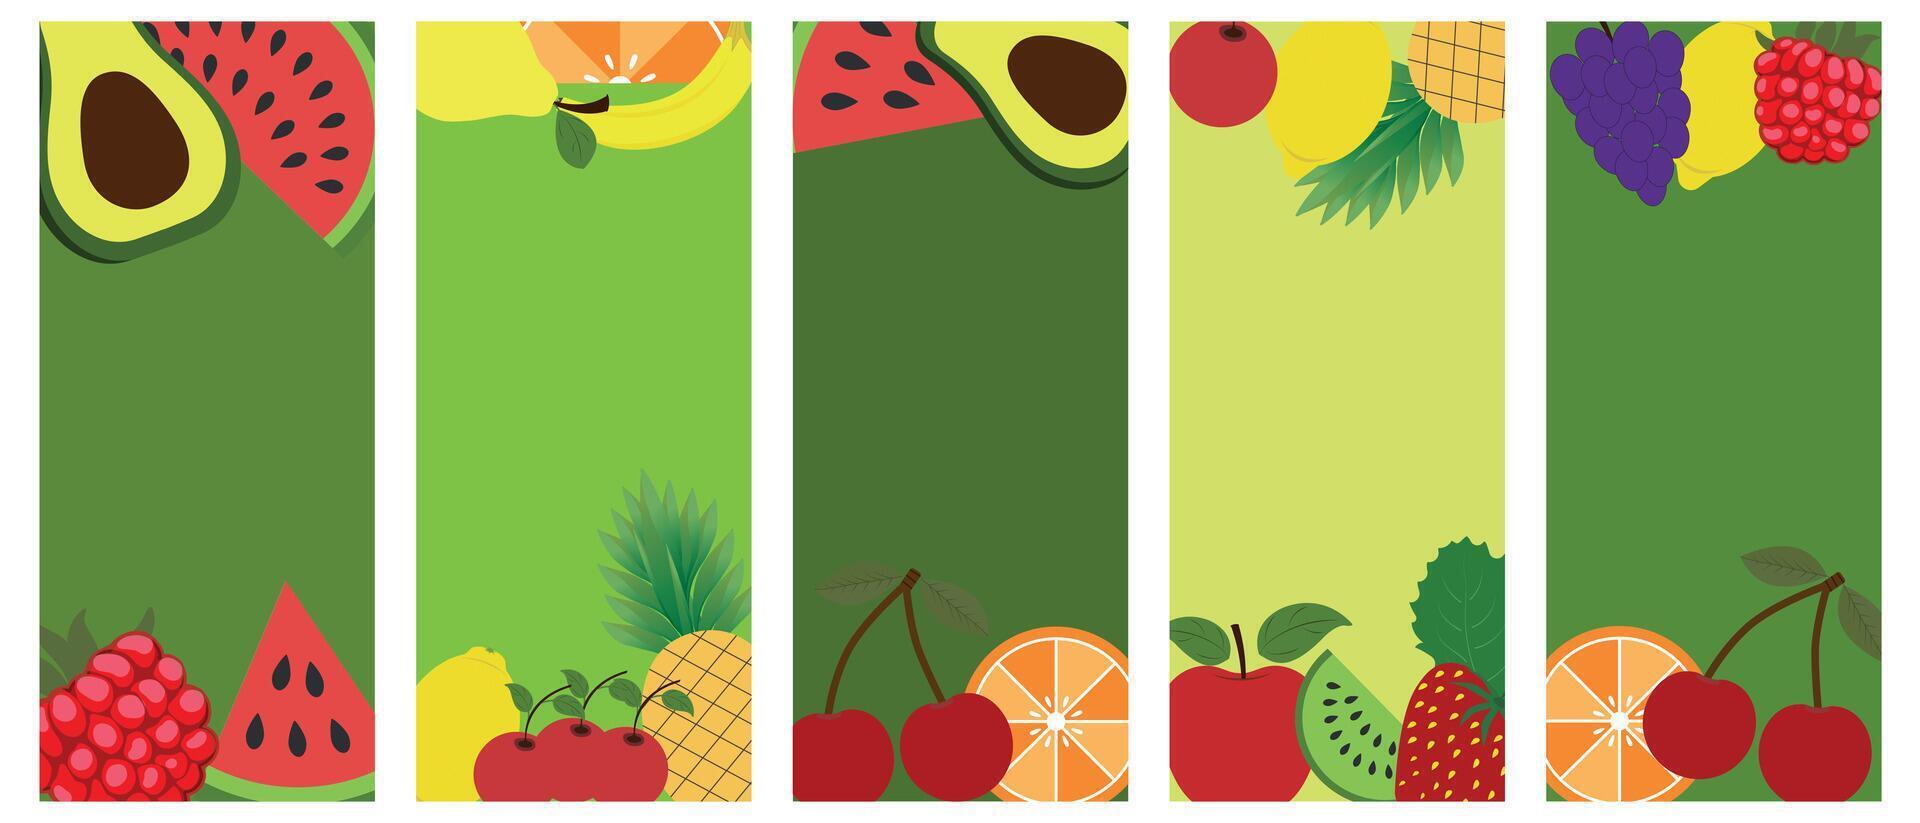 uma colagem do colori frutas e bagas. colorida arco Iris vetor dieta bandeiras. vitaminas, frutas e bagas do orgânico e saudável nutrição.